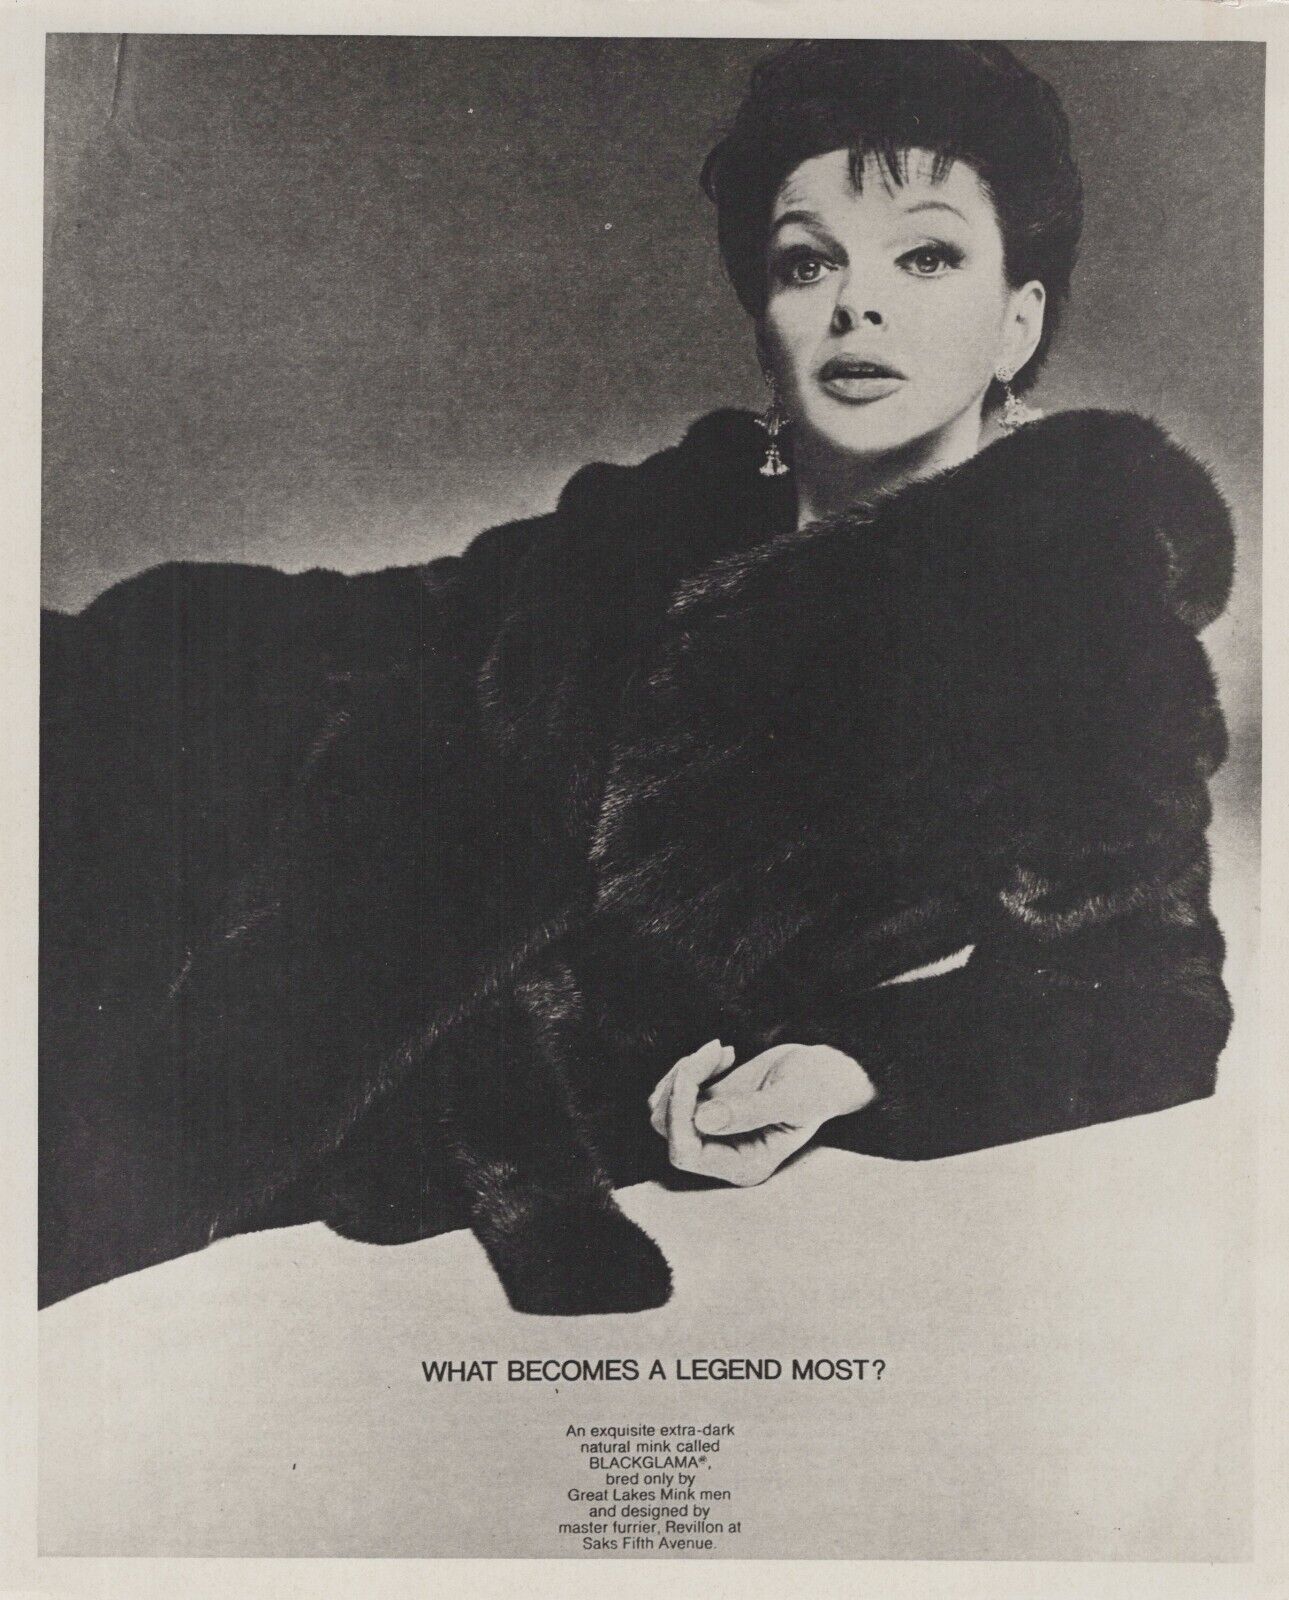 Judy Garland (1950s) ❤ Hollywood Beauty - Stylish Glamorous Vintage Photo K 409